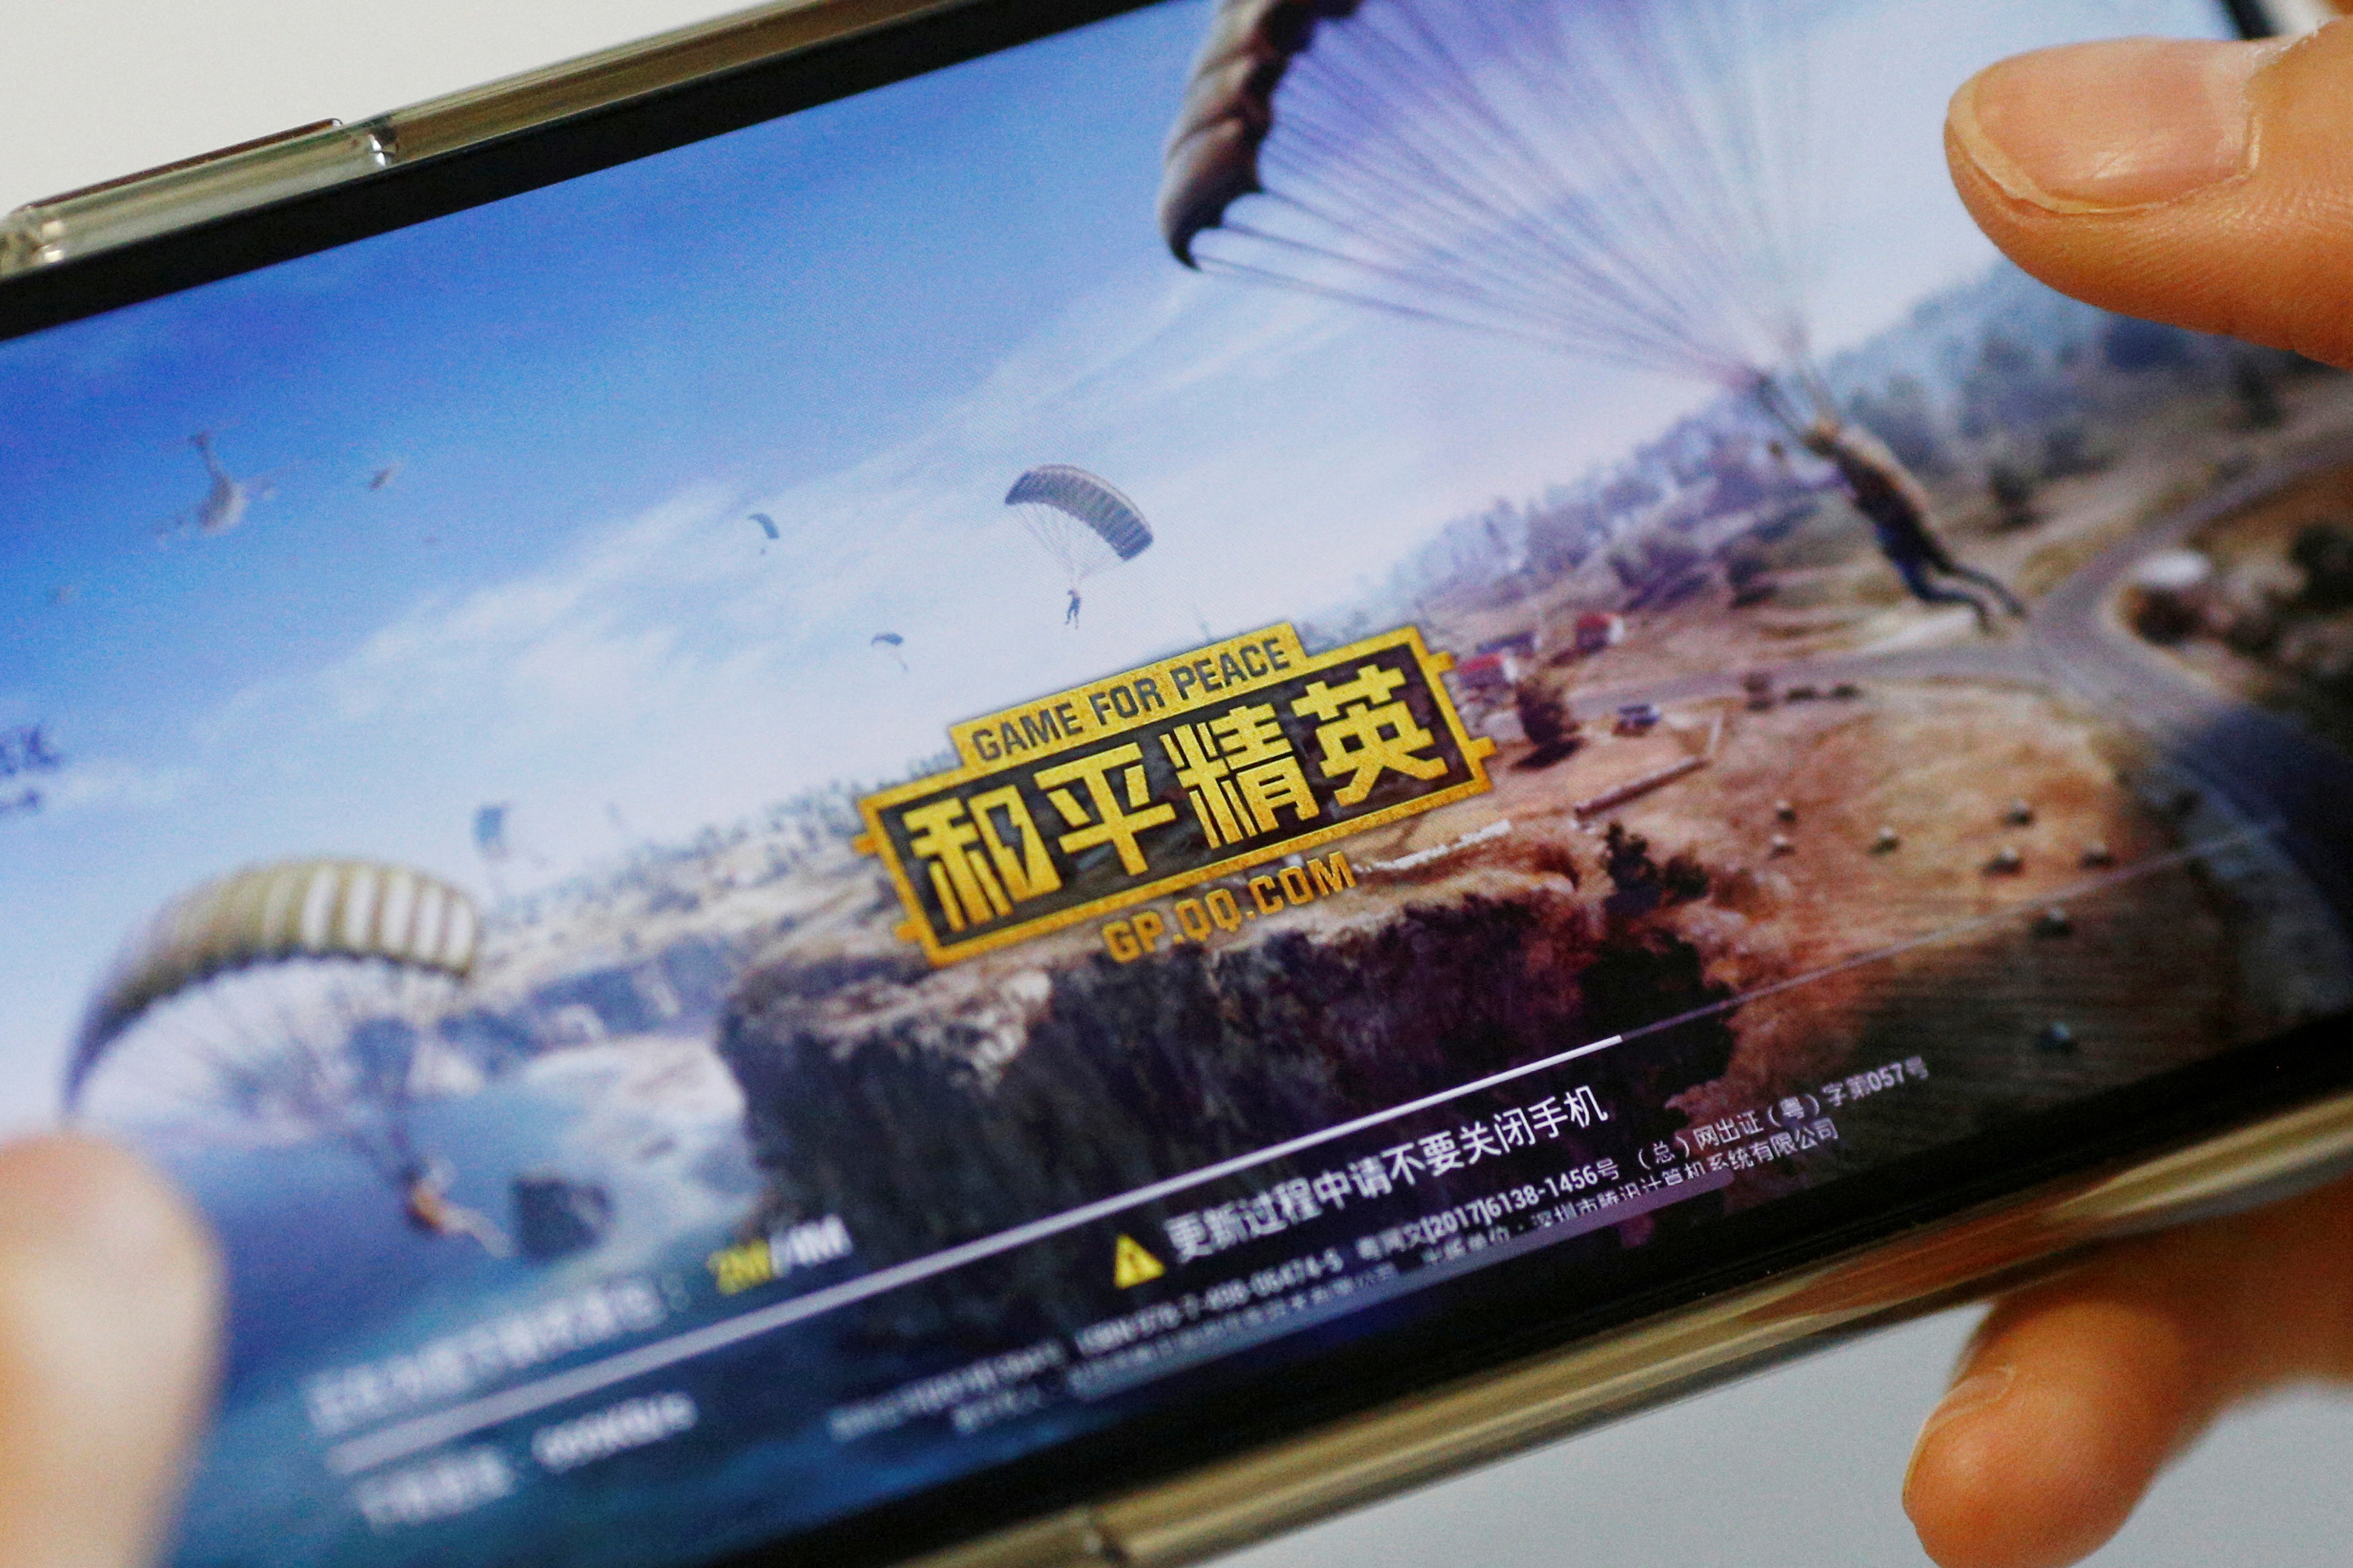 中国出台了新法律，旨在限制儿童和成人玩电子游戏的时间和金钱。  /弗洛伦斯·罗/路透社